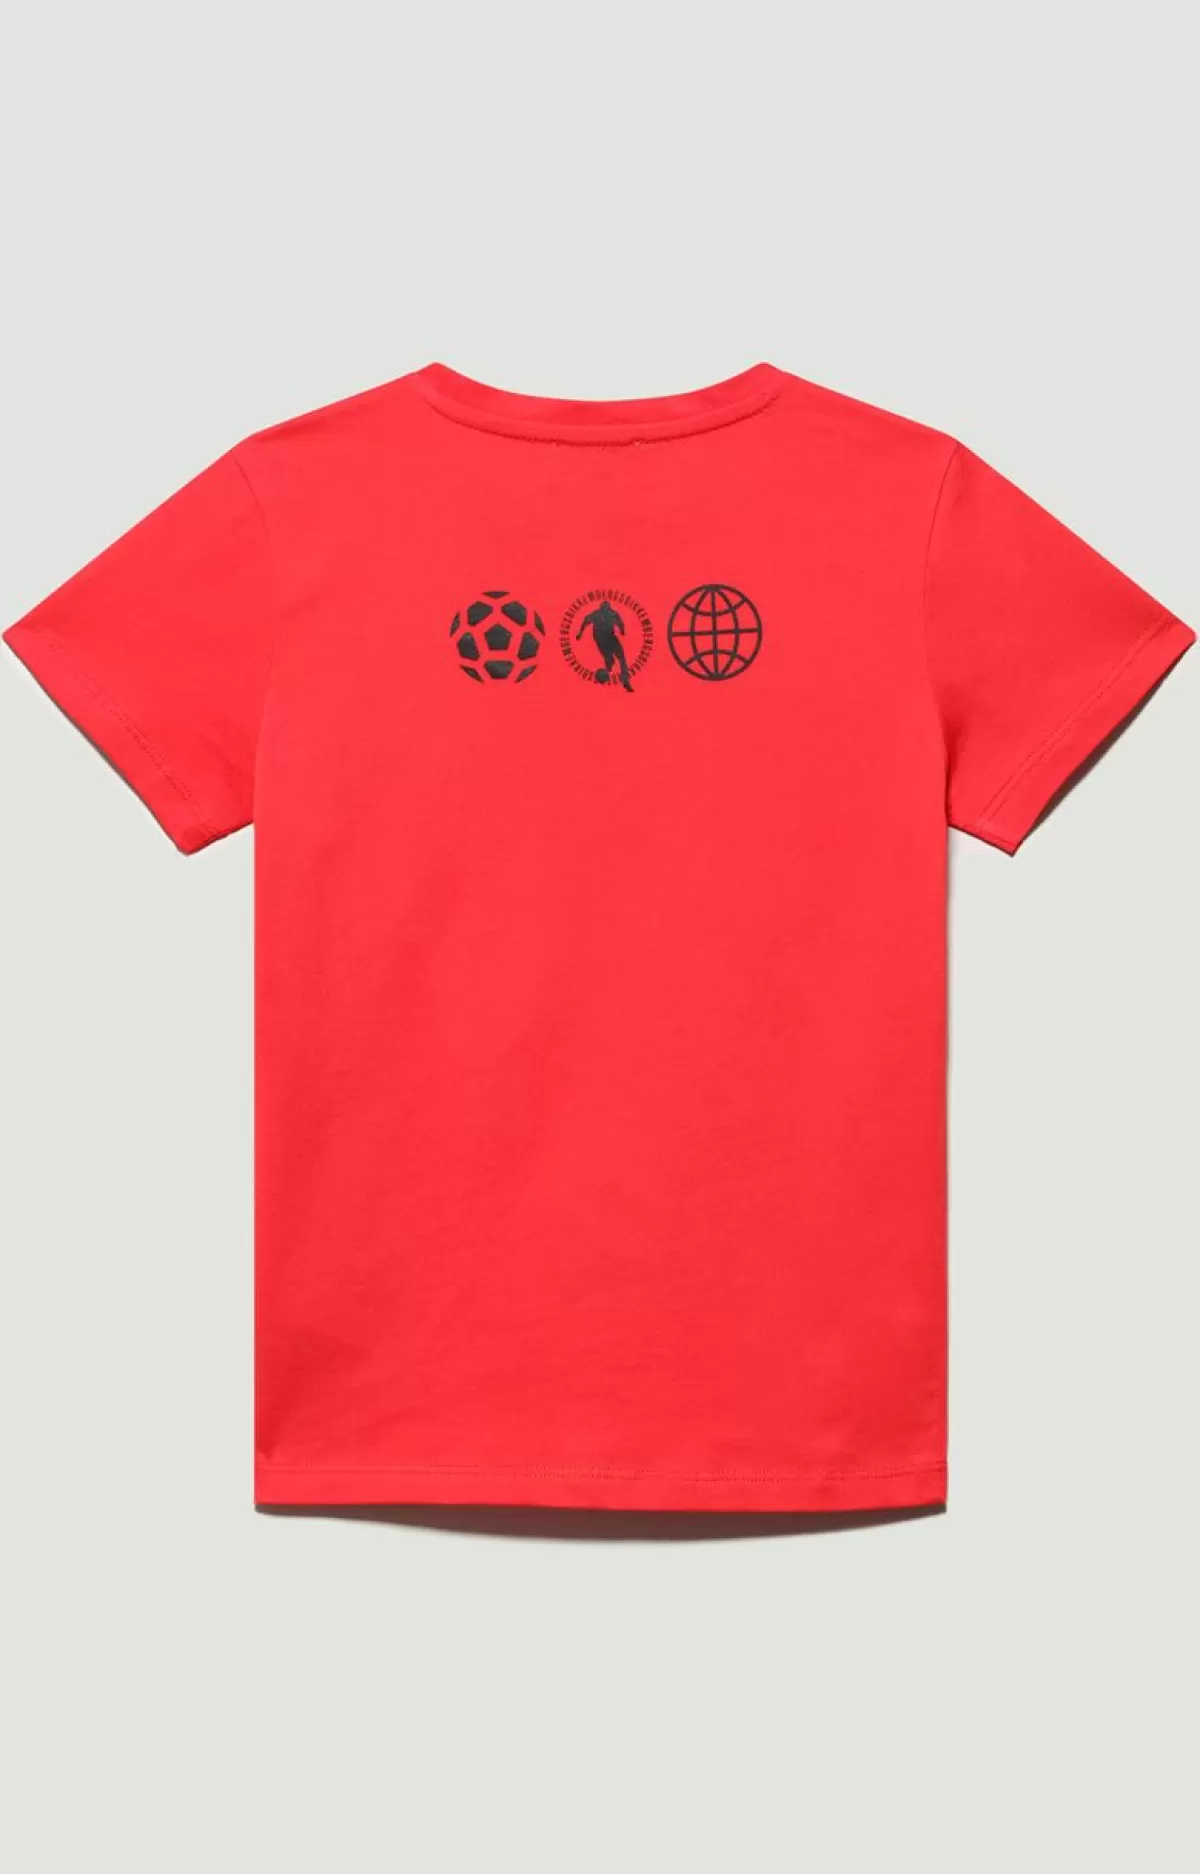 Bikkembergs Boys' Print T-Shirt Poppy Red Hot